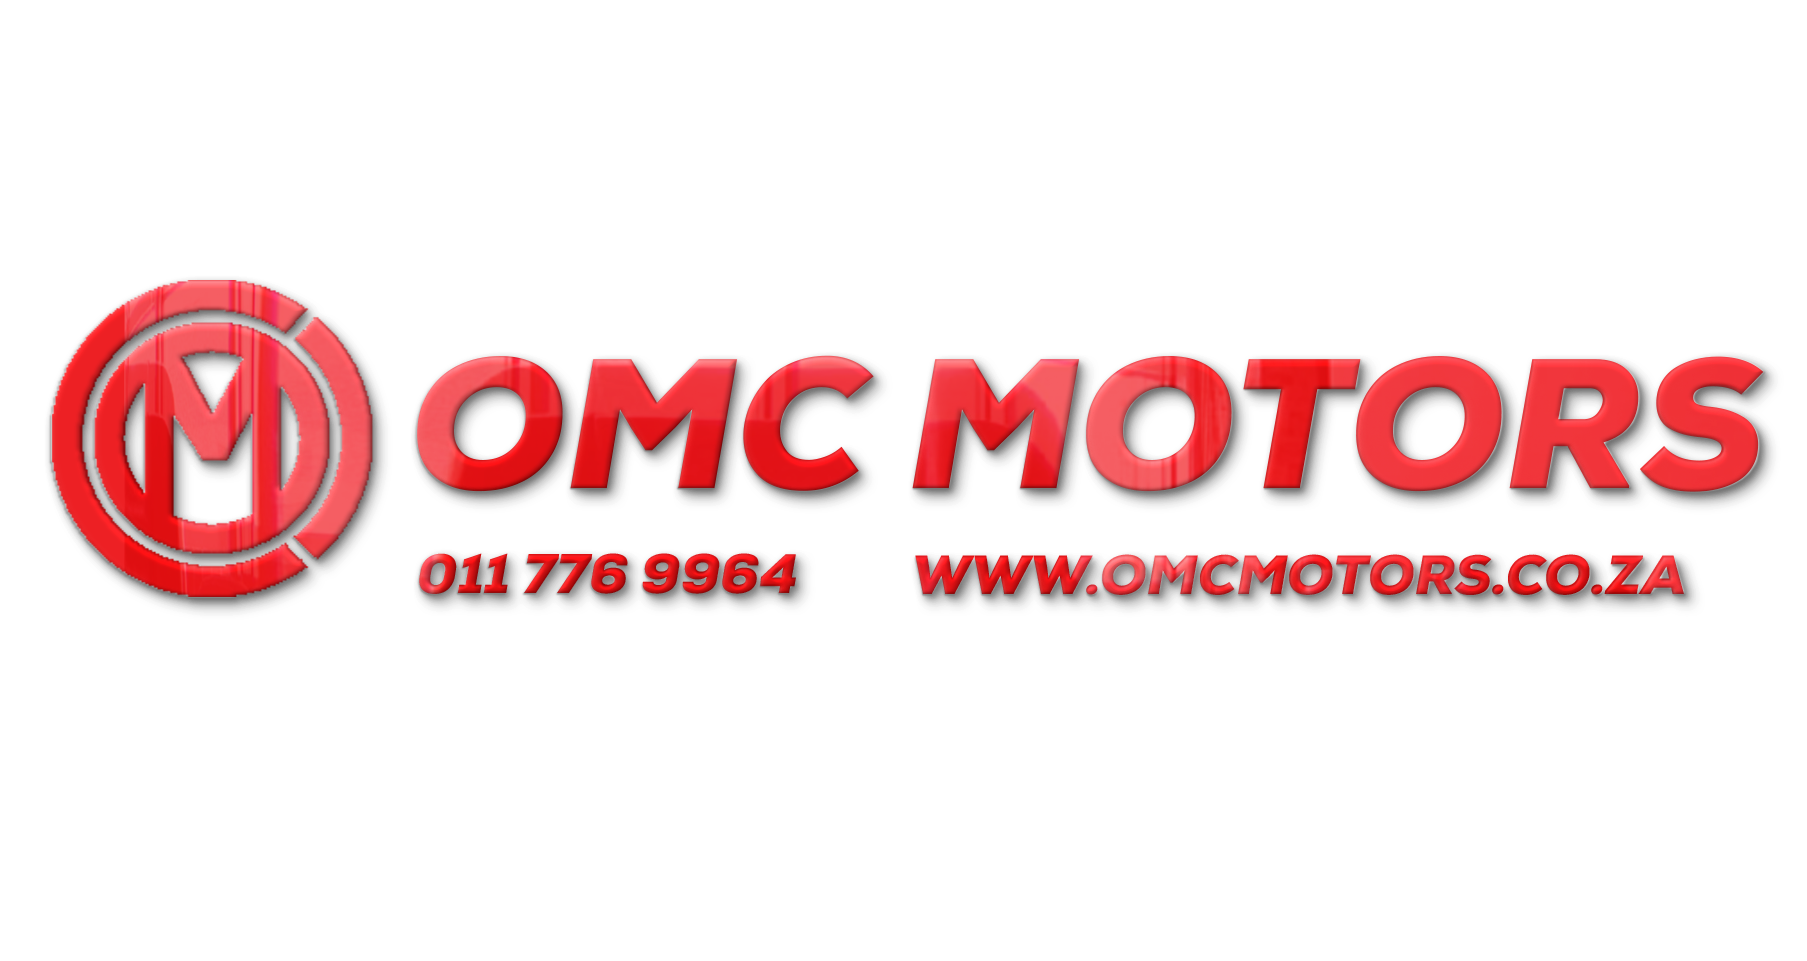 OMC Motors